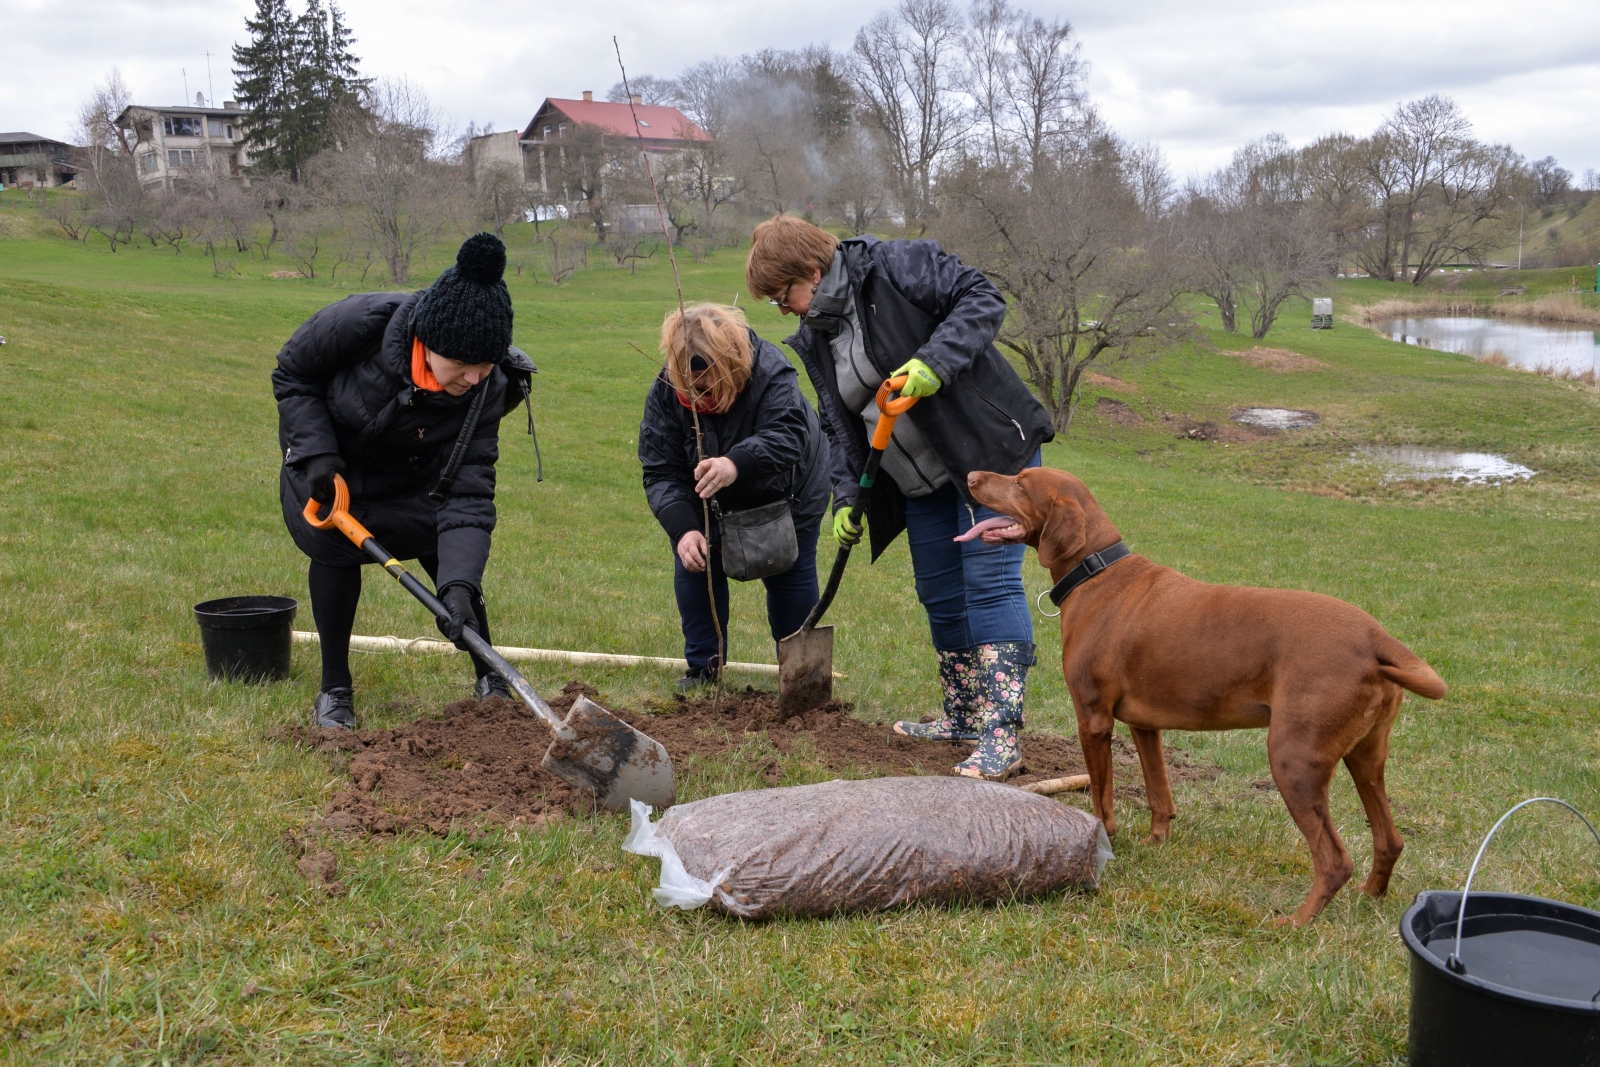 Tiek stādīta ābele, Inai Jurkevičai un pavadonei palīdz Ieva Bērziņa ar savu suni (16)